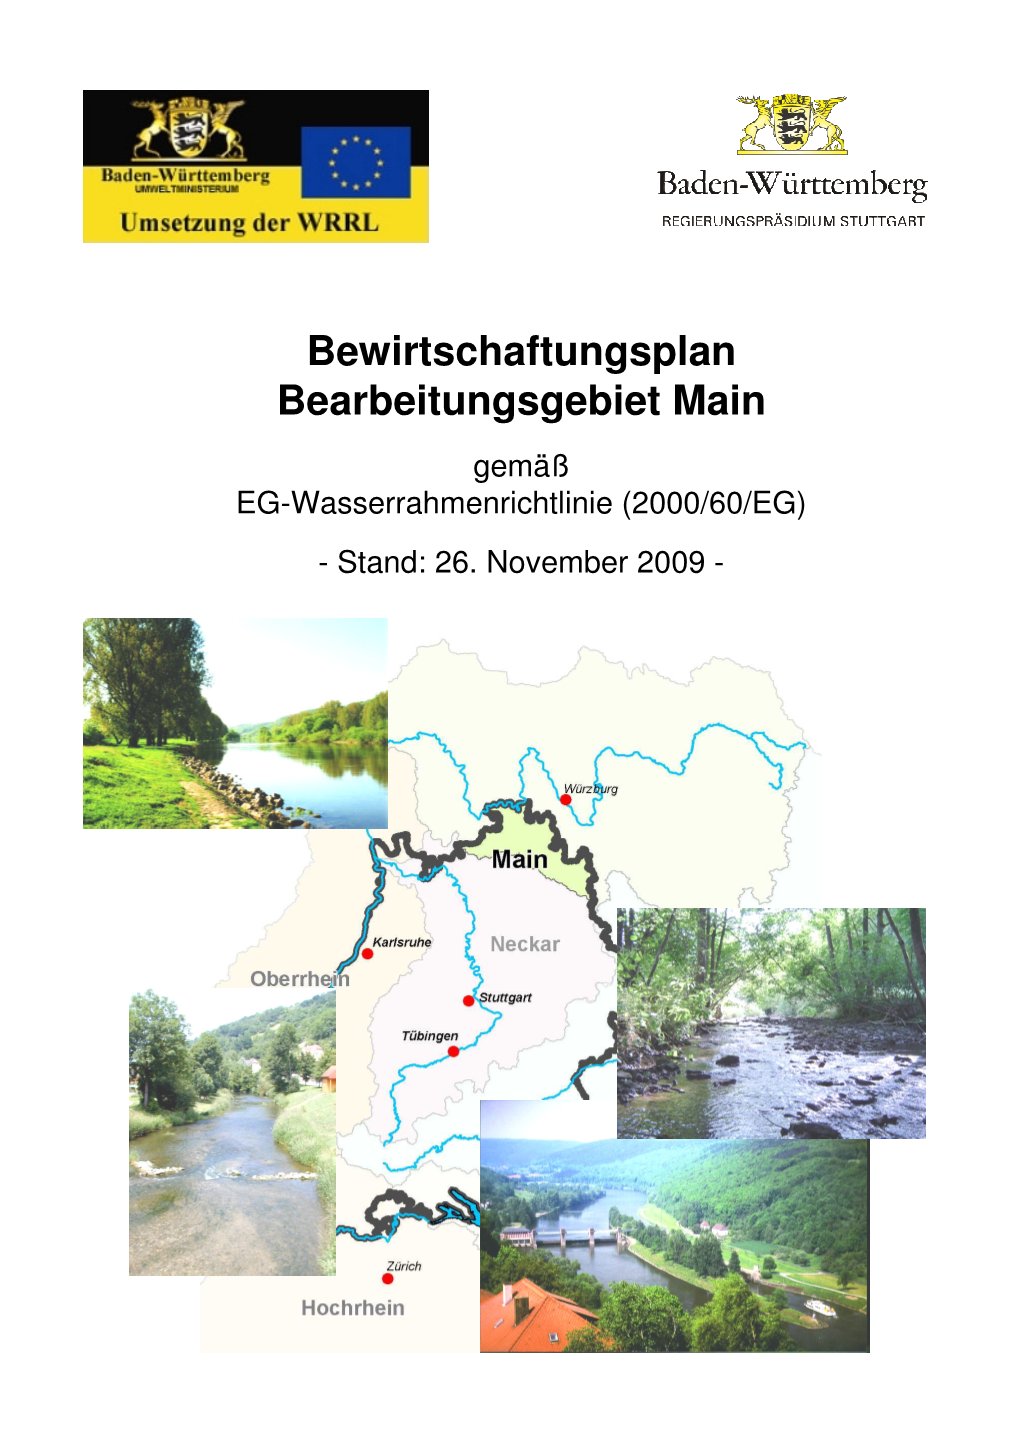 Bewirtschaftungsplan Bearbeitungsgebiet Main Gemäß EG-Wasserrahmenrichtlinie (2000/60/EG) - Stand: 26